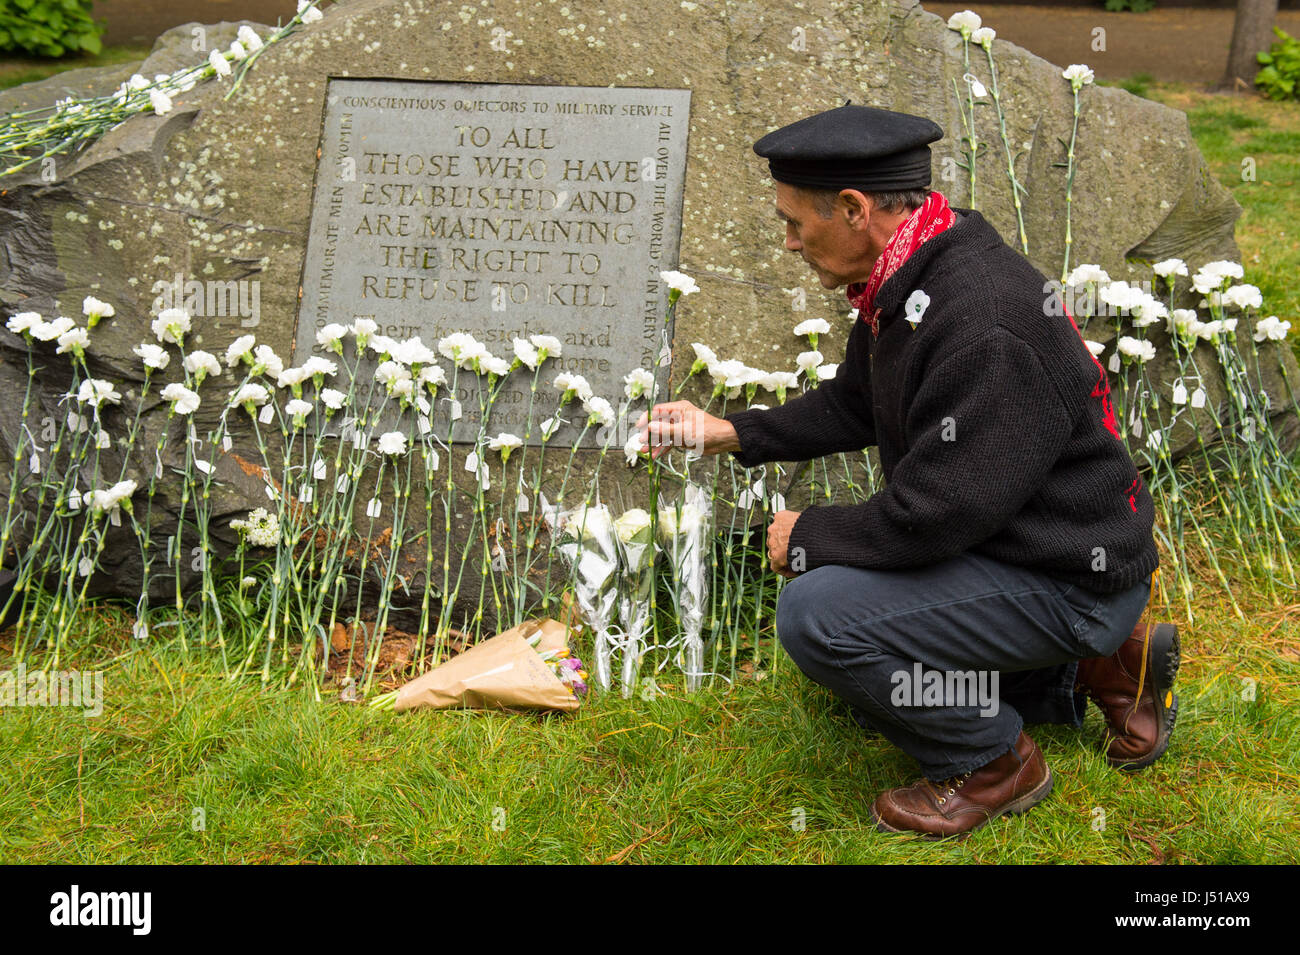 L'acteur Mark Rylance lieux fleurs aux objecteurs de conscience de la pierre, au cours de la journée annuelle de l'Objection de Conscience cérémonie à Tavistock Square, Londres. Banque D'Images